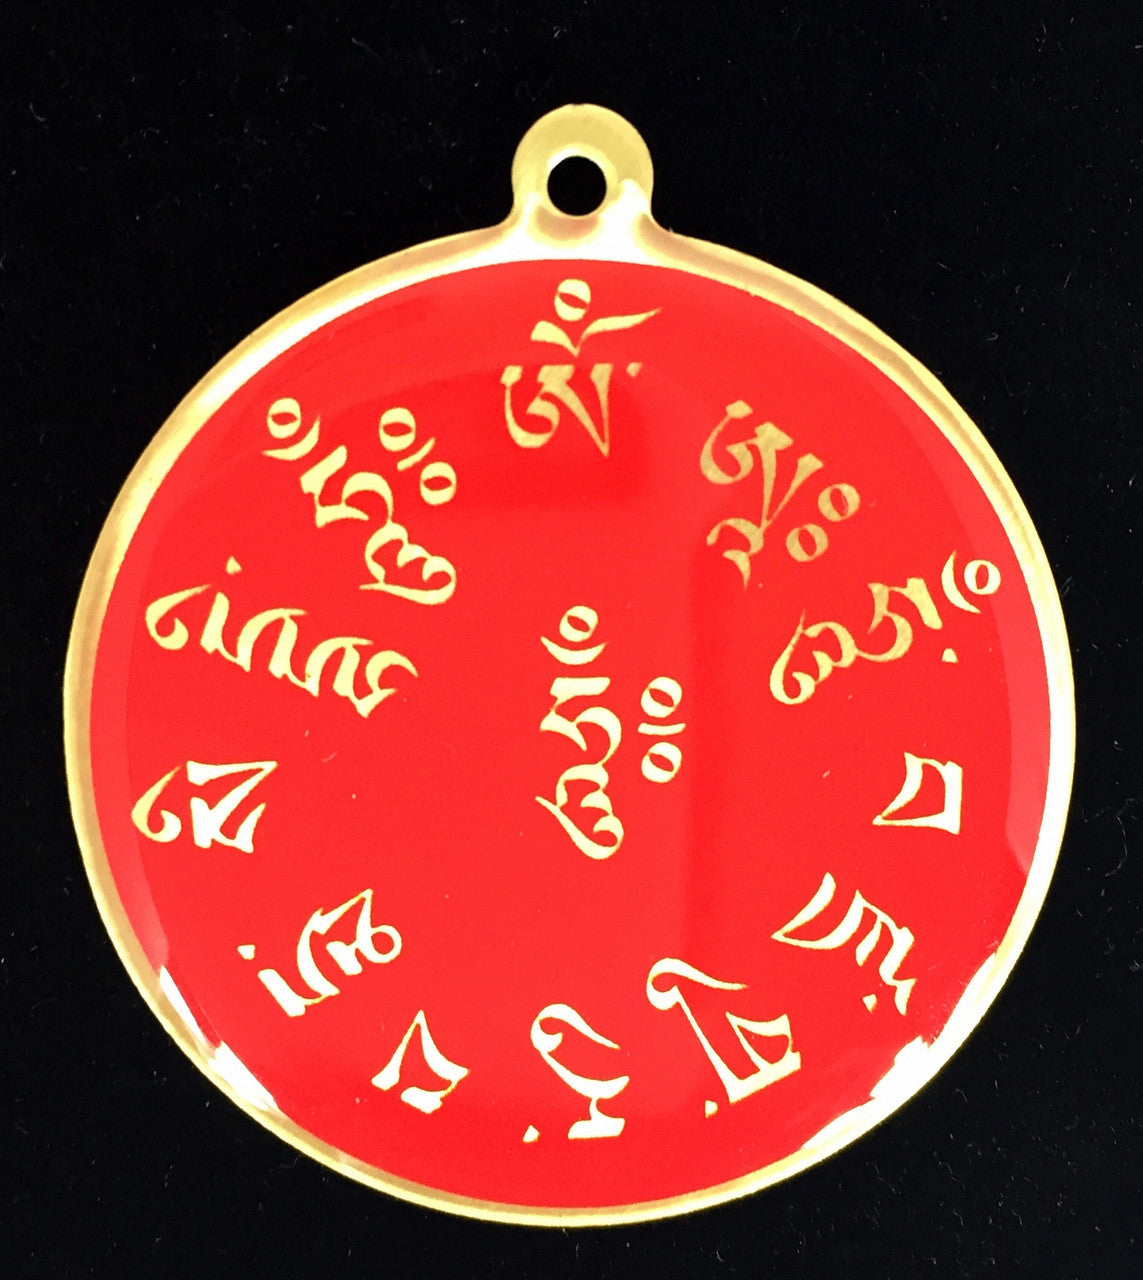 Guru Rinpoche Mantra Deity Medallion